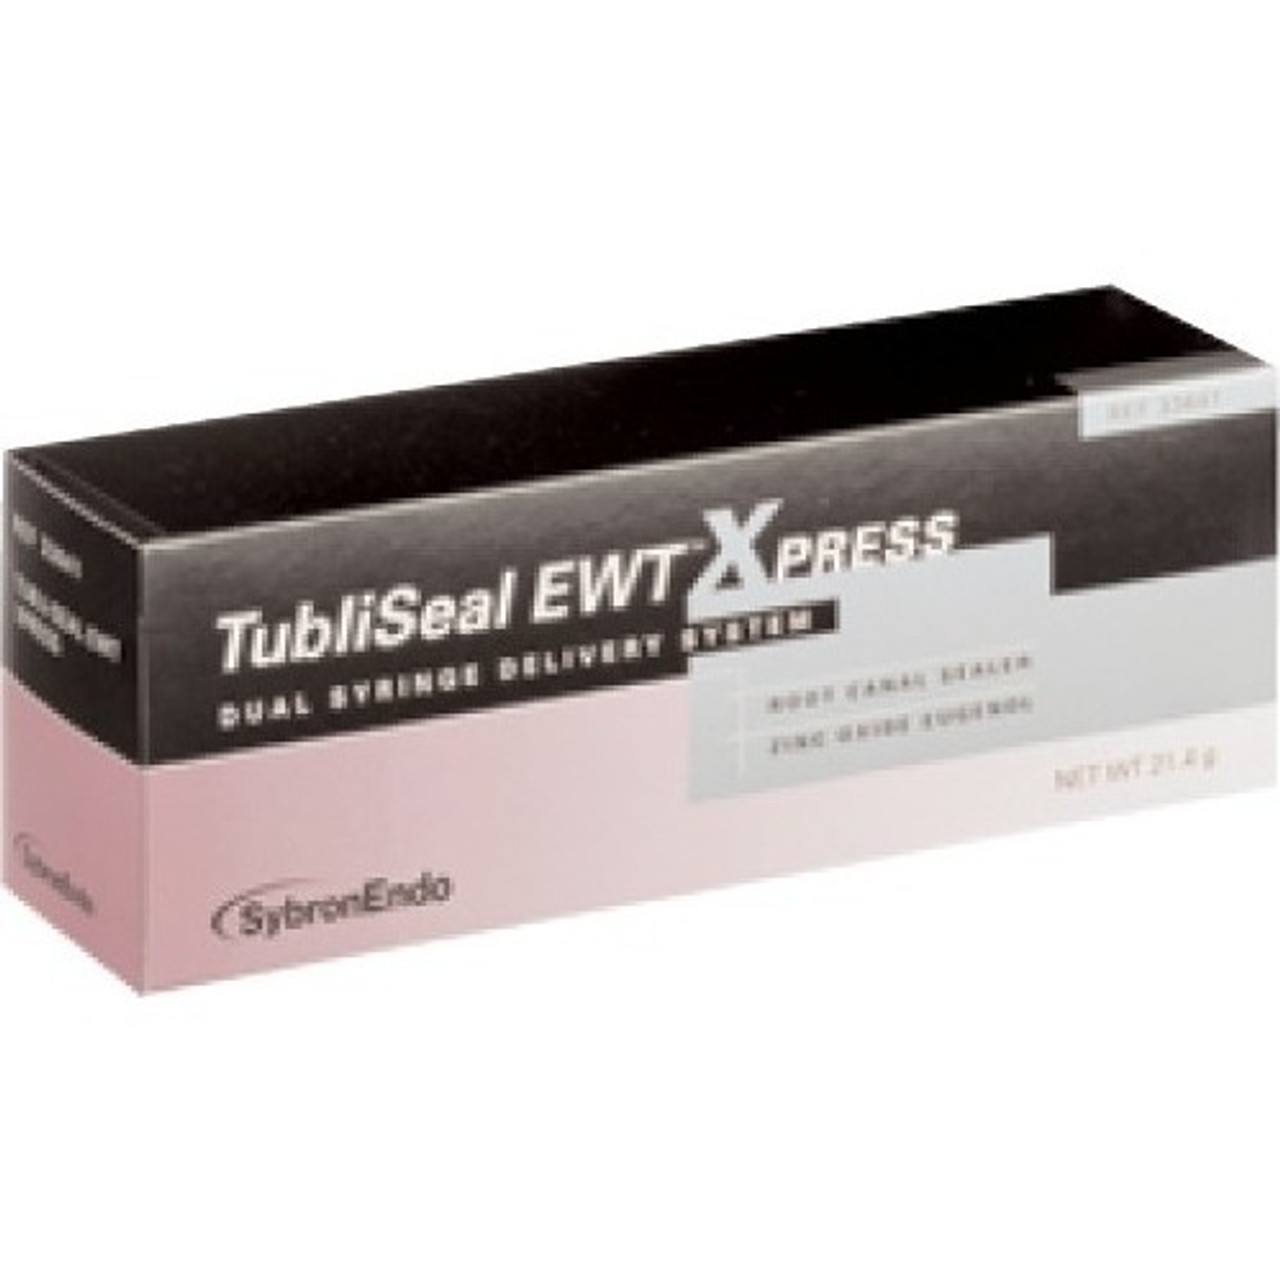 Sybron Endo Tubli-Seal EWT Xpress Root Canal Sealer 10.8gm Syringe, 2/bx